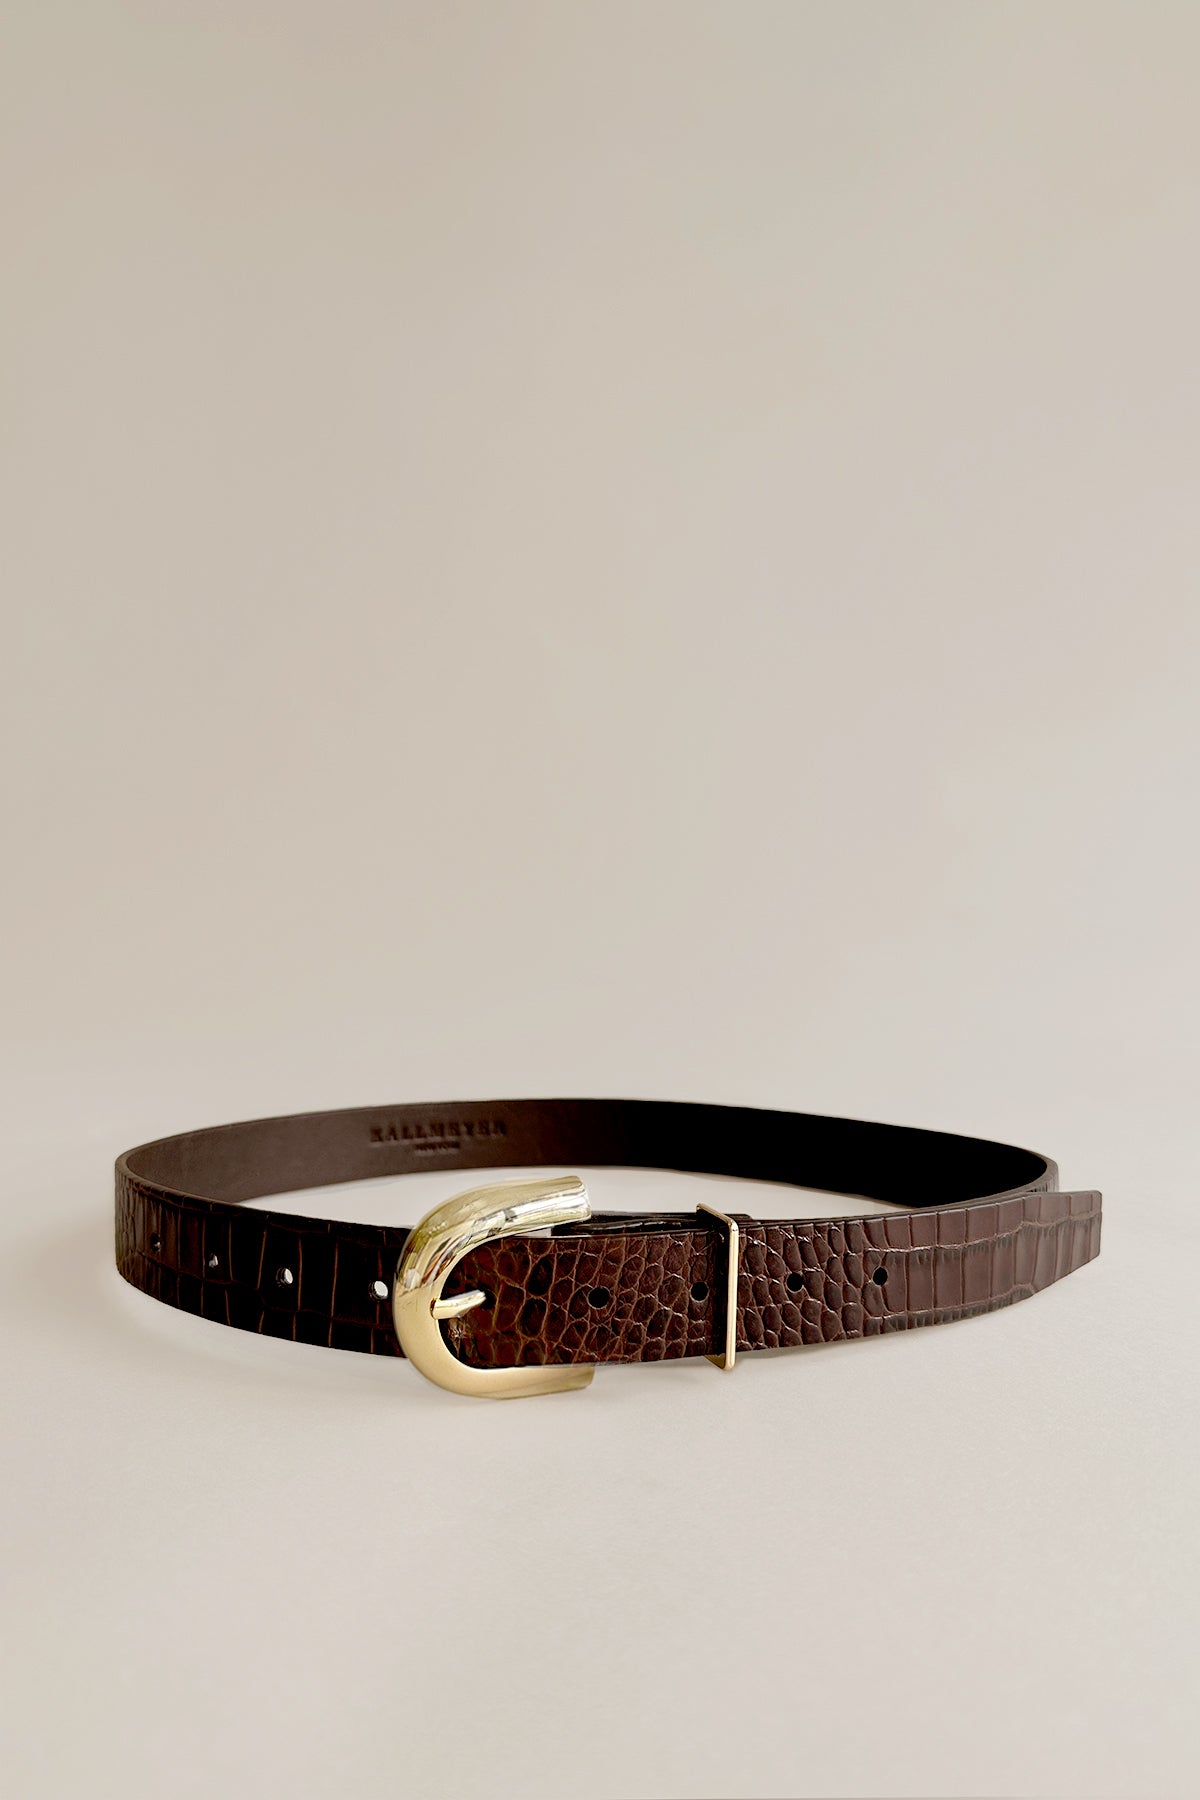 Dark Brown Suede Belt, Signature Buckle (Gold)